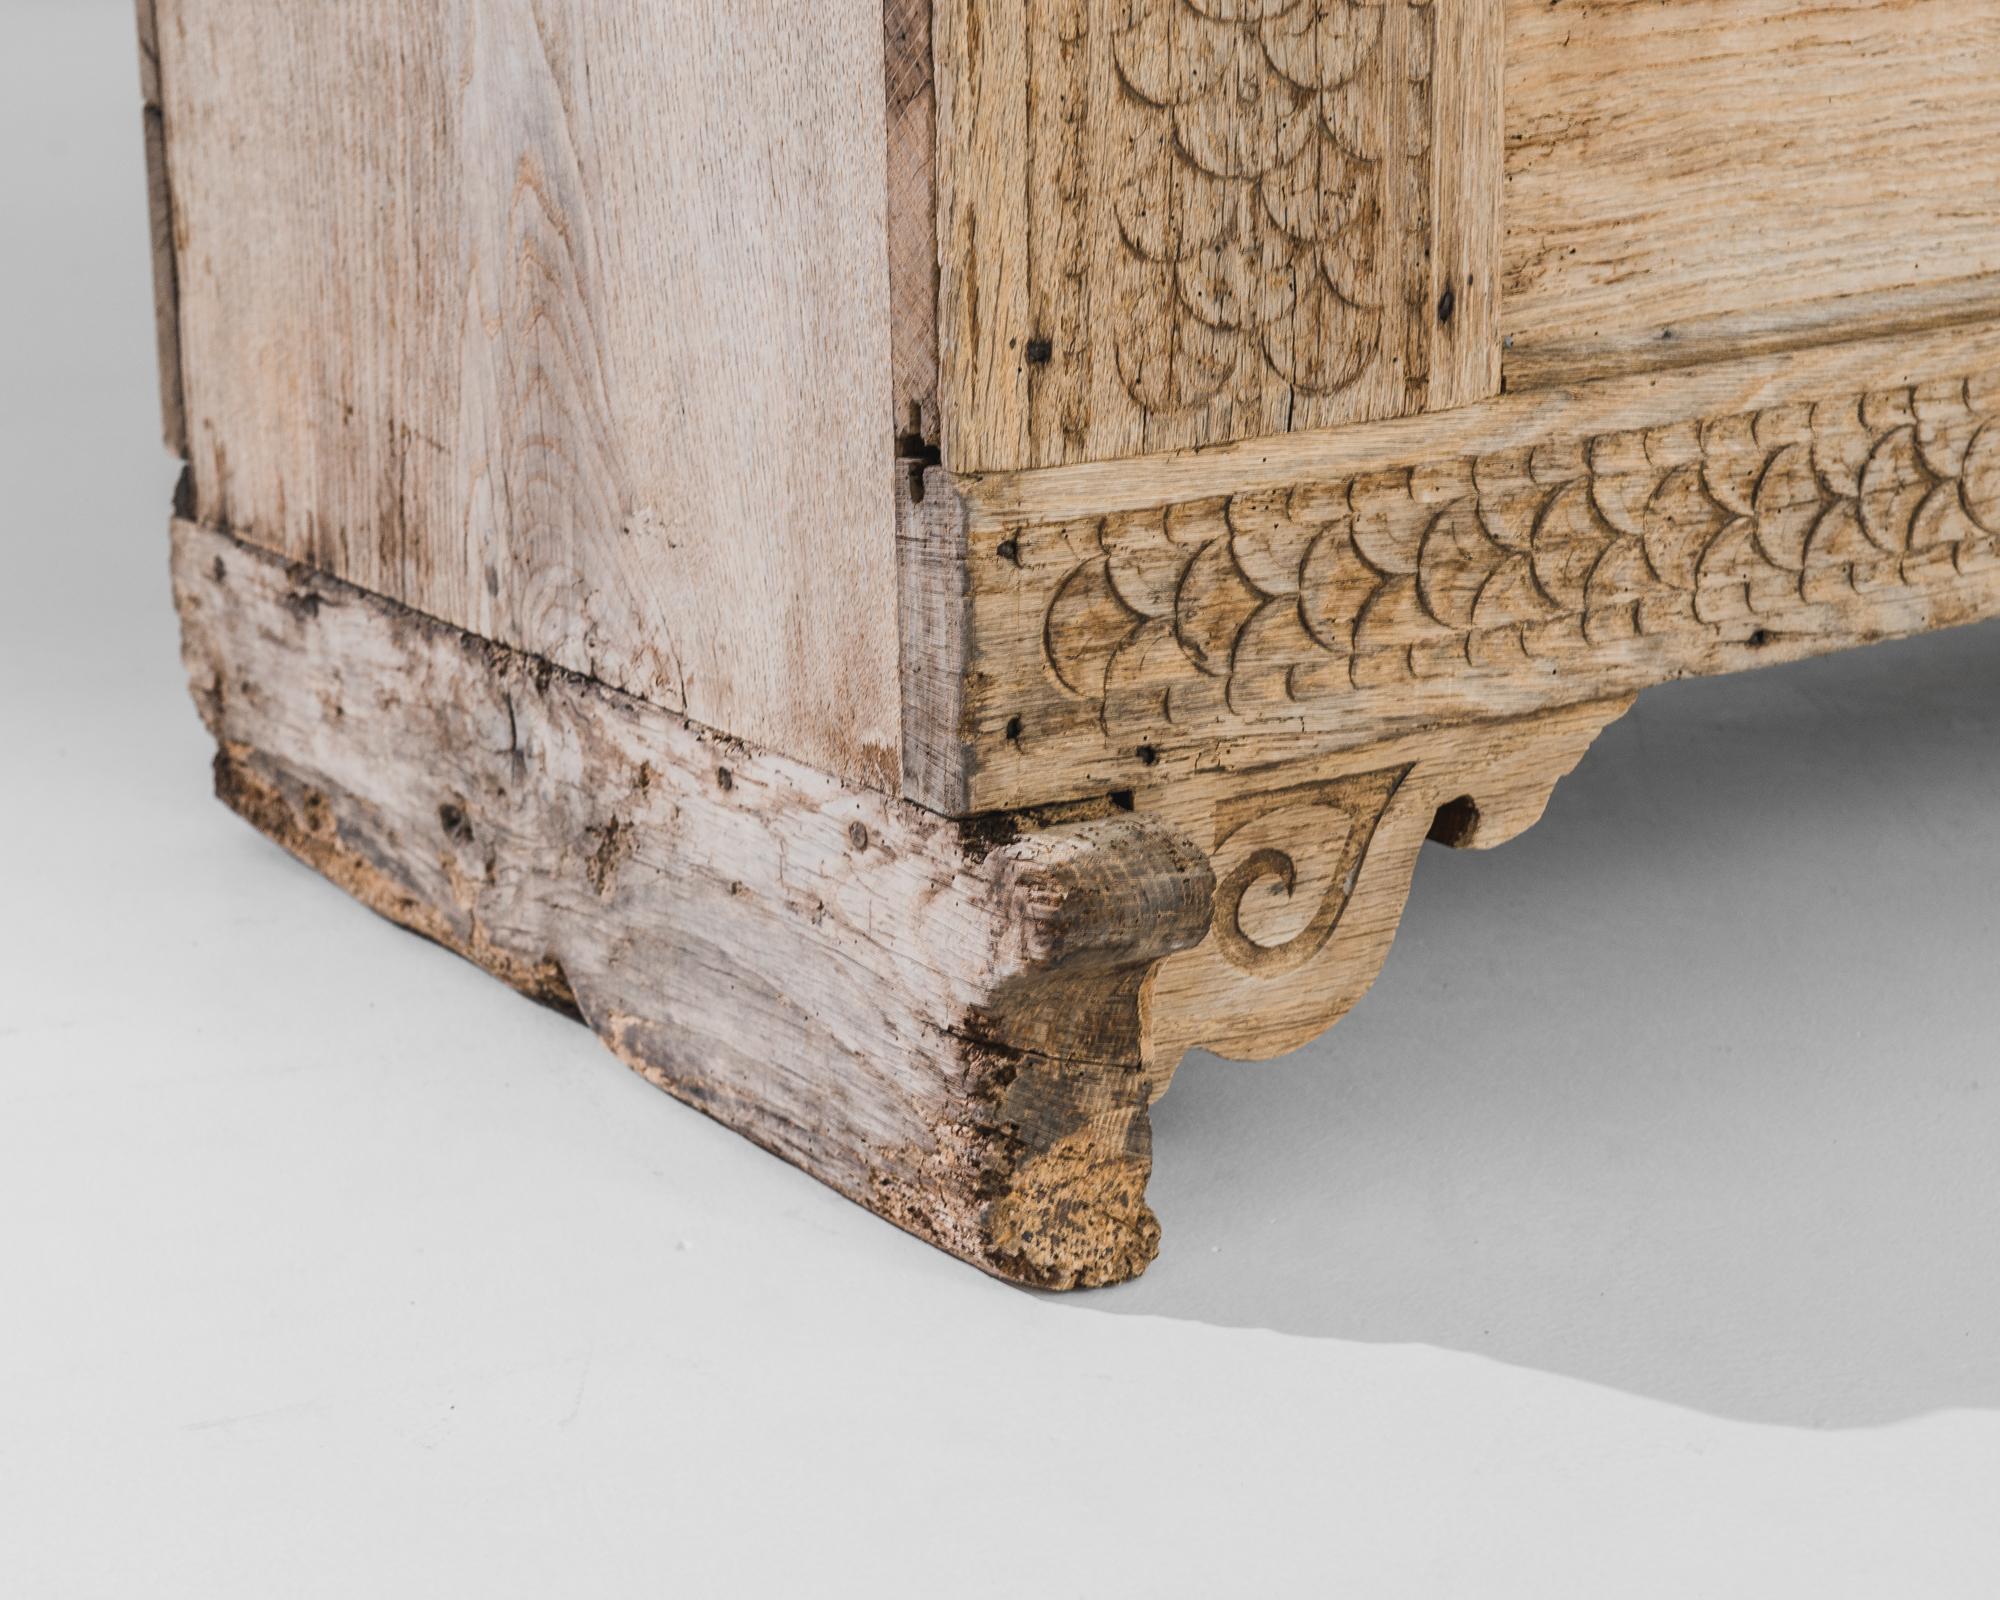 Erleben Sie den Charme des 19. Jahrhunderts in Deutschland mit diesem provinziellen Holzkoffer. Die filigranen Schnitzereien, die das charmante Gehäuse zieren, sind mit zarten Blumenmustern verziert und zeugen von der feinen Handwerkskunst der